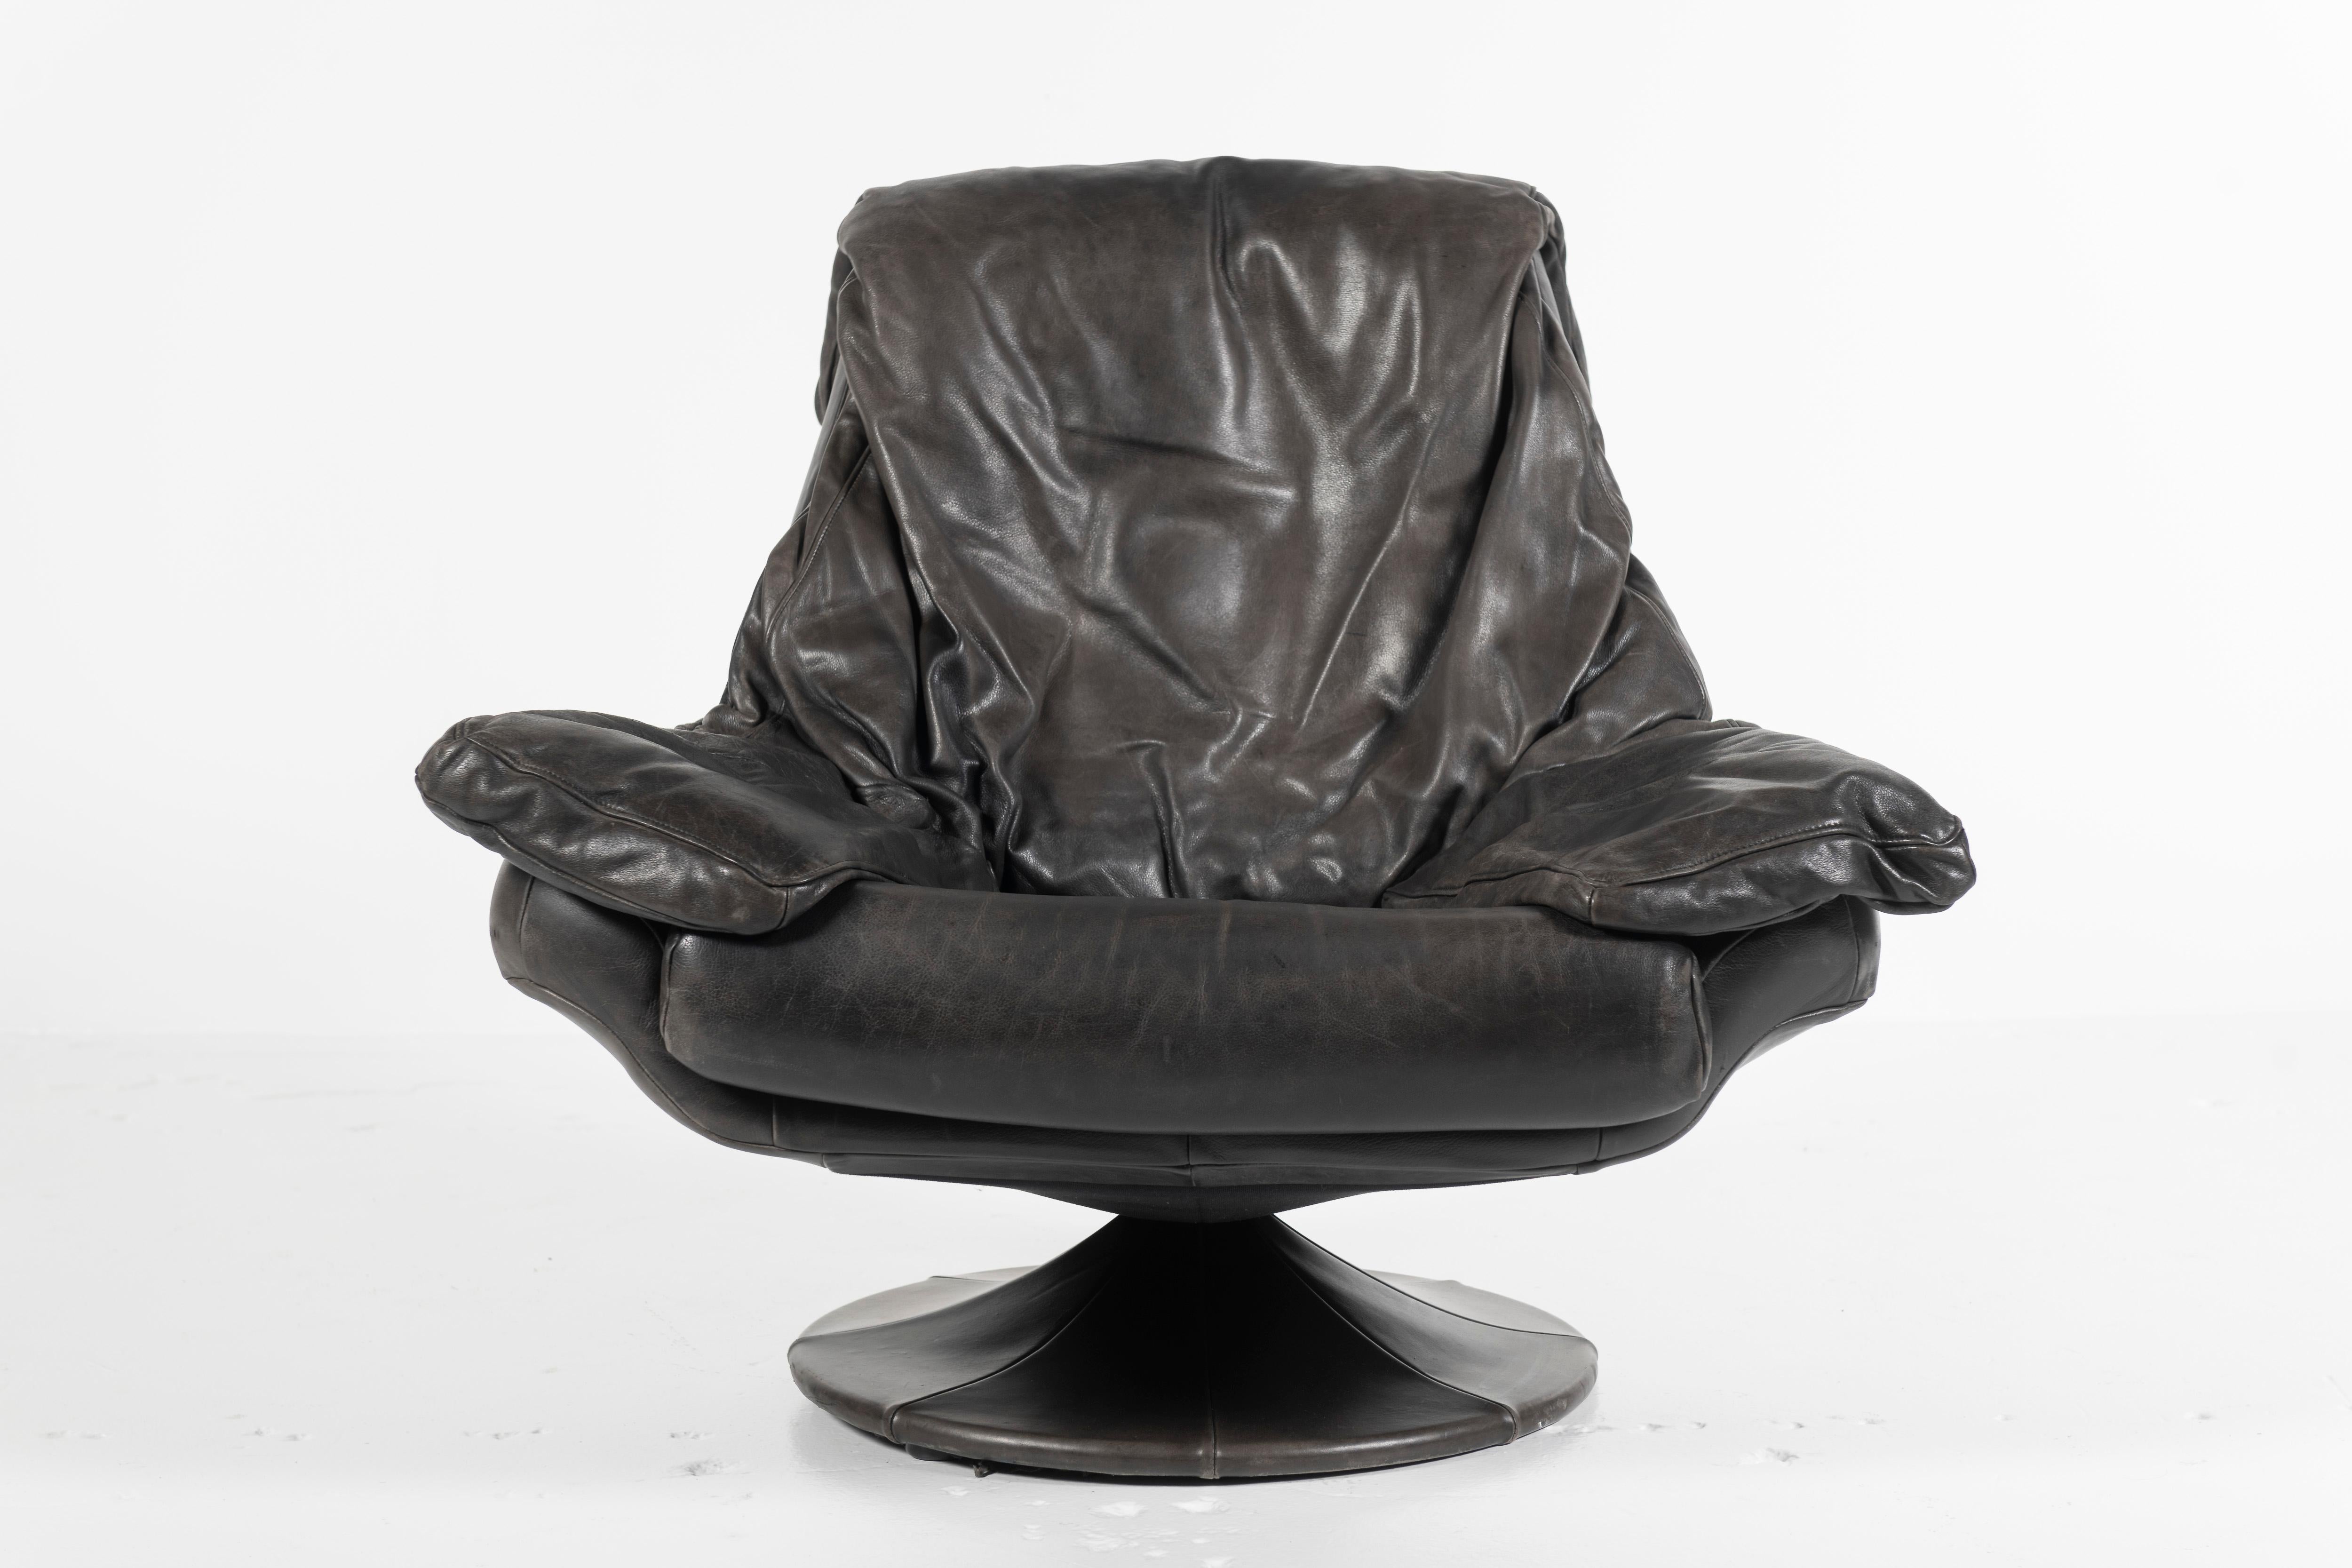 Détendez-vous et dégustez votre boisson préférée dans ce fauteuil pivotant super confortable fabriqué au Danemark en cuir noir sur un cadre en bois reposant sur une base recouverte de cuir. Le cuir a la patine que l'on attend d'une chaise longue